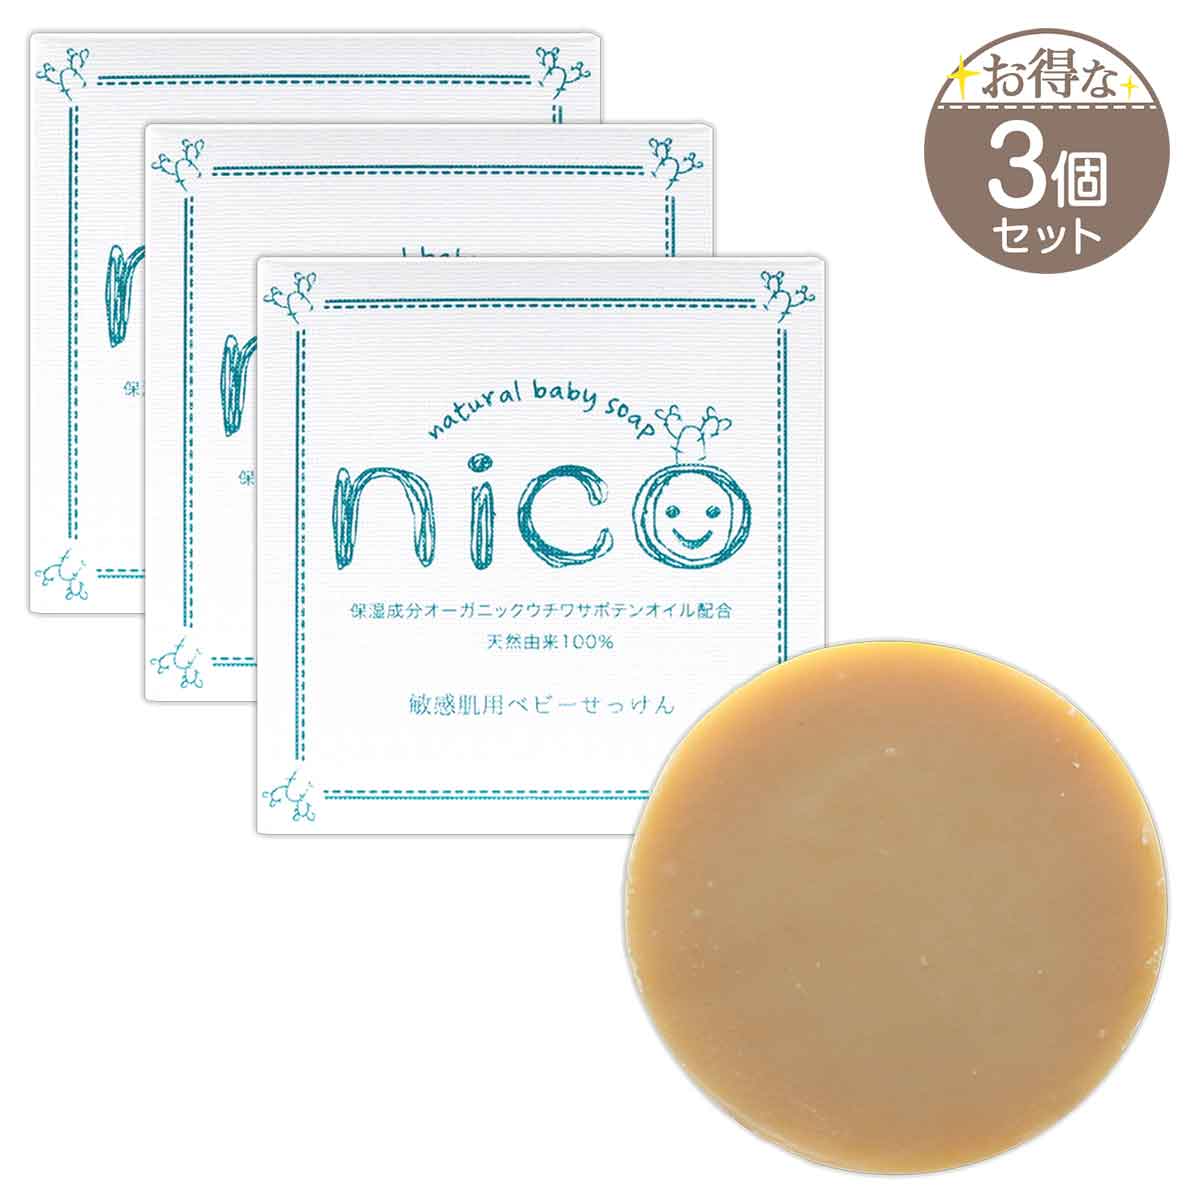 Nico石鹸 ニコ石鹸 にこせっけん 敏感肌 用 50g エレファント ベビー